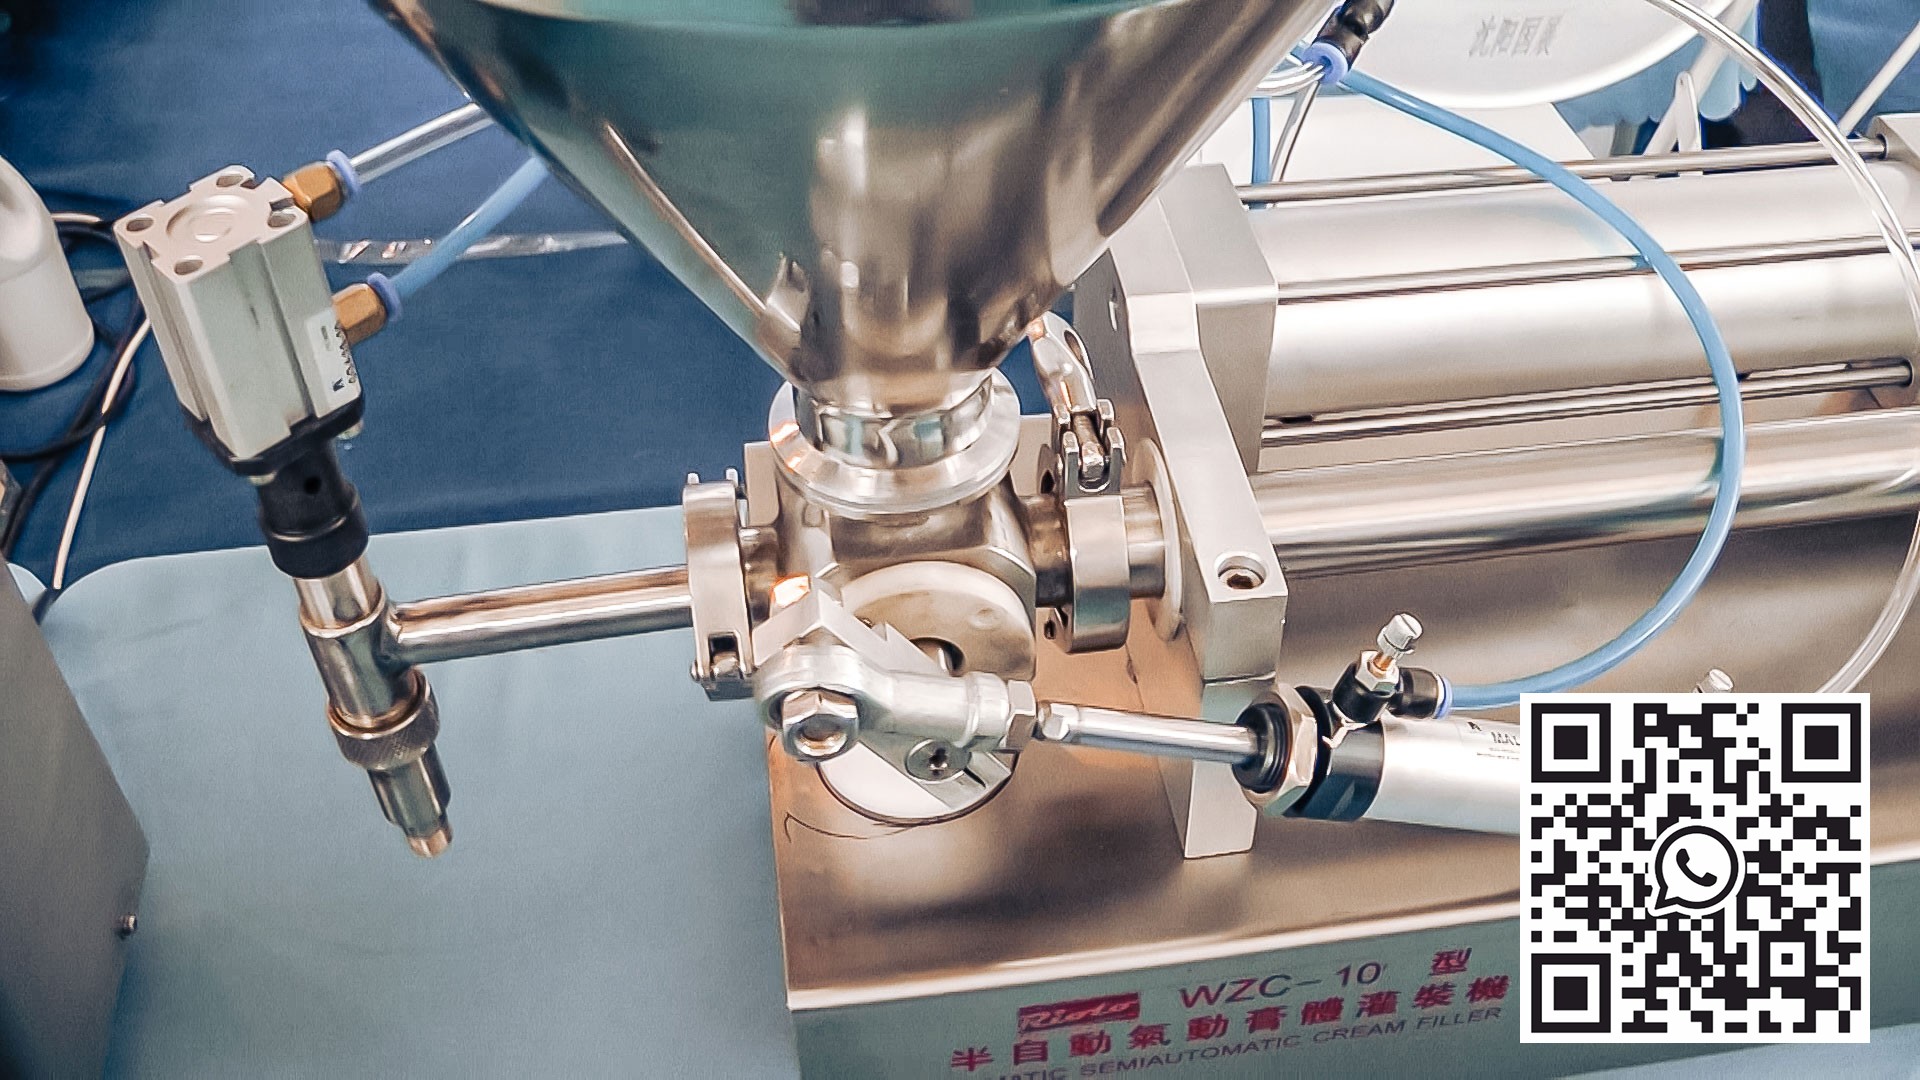 Equipo automático para dosificación de cremas y ungüentos en la producción farmacéutica.